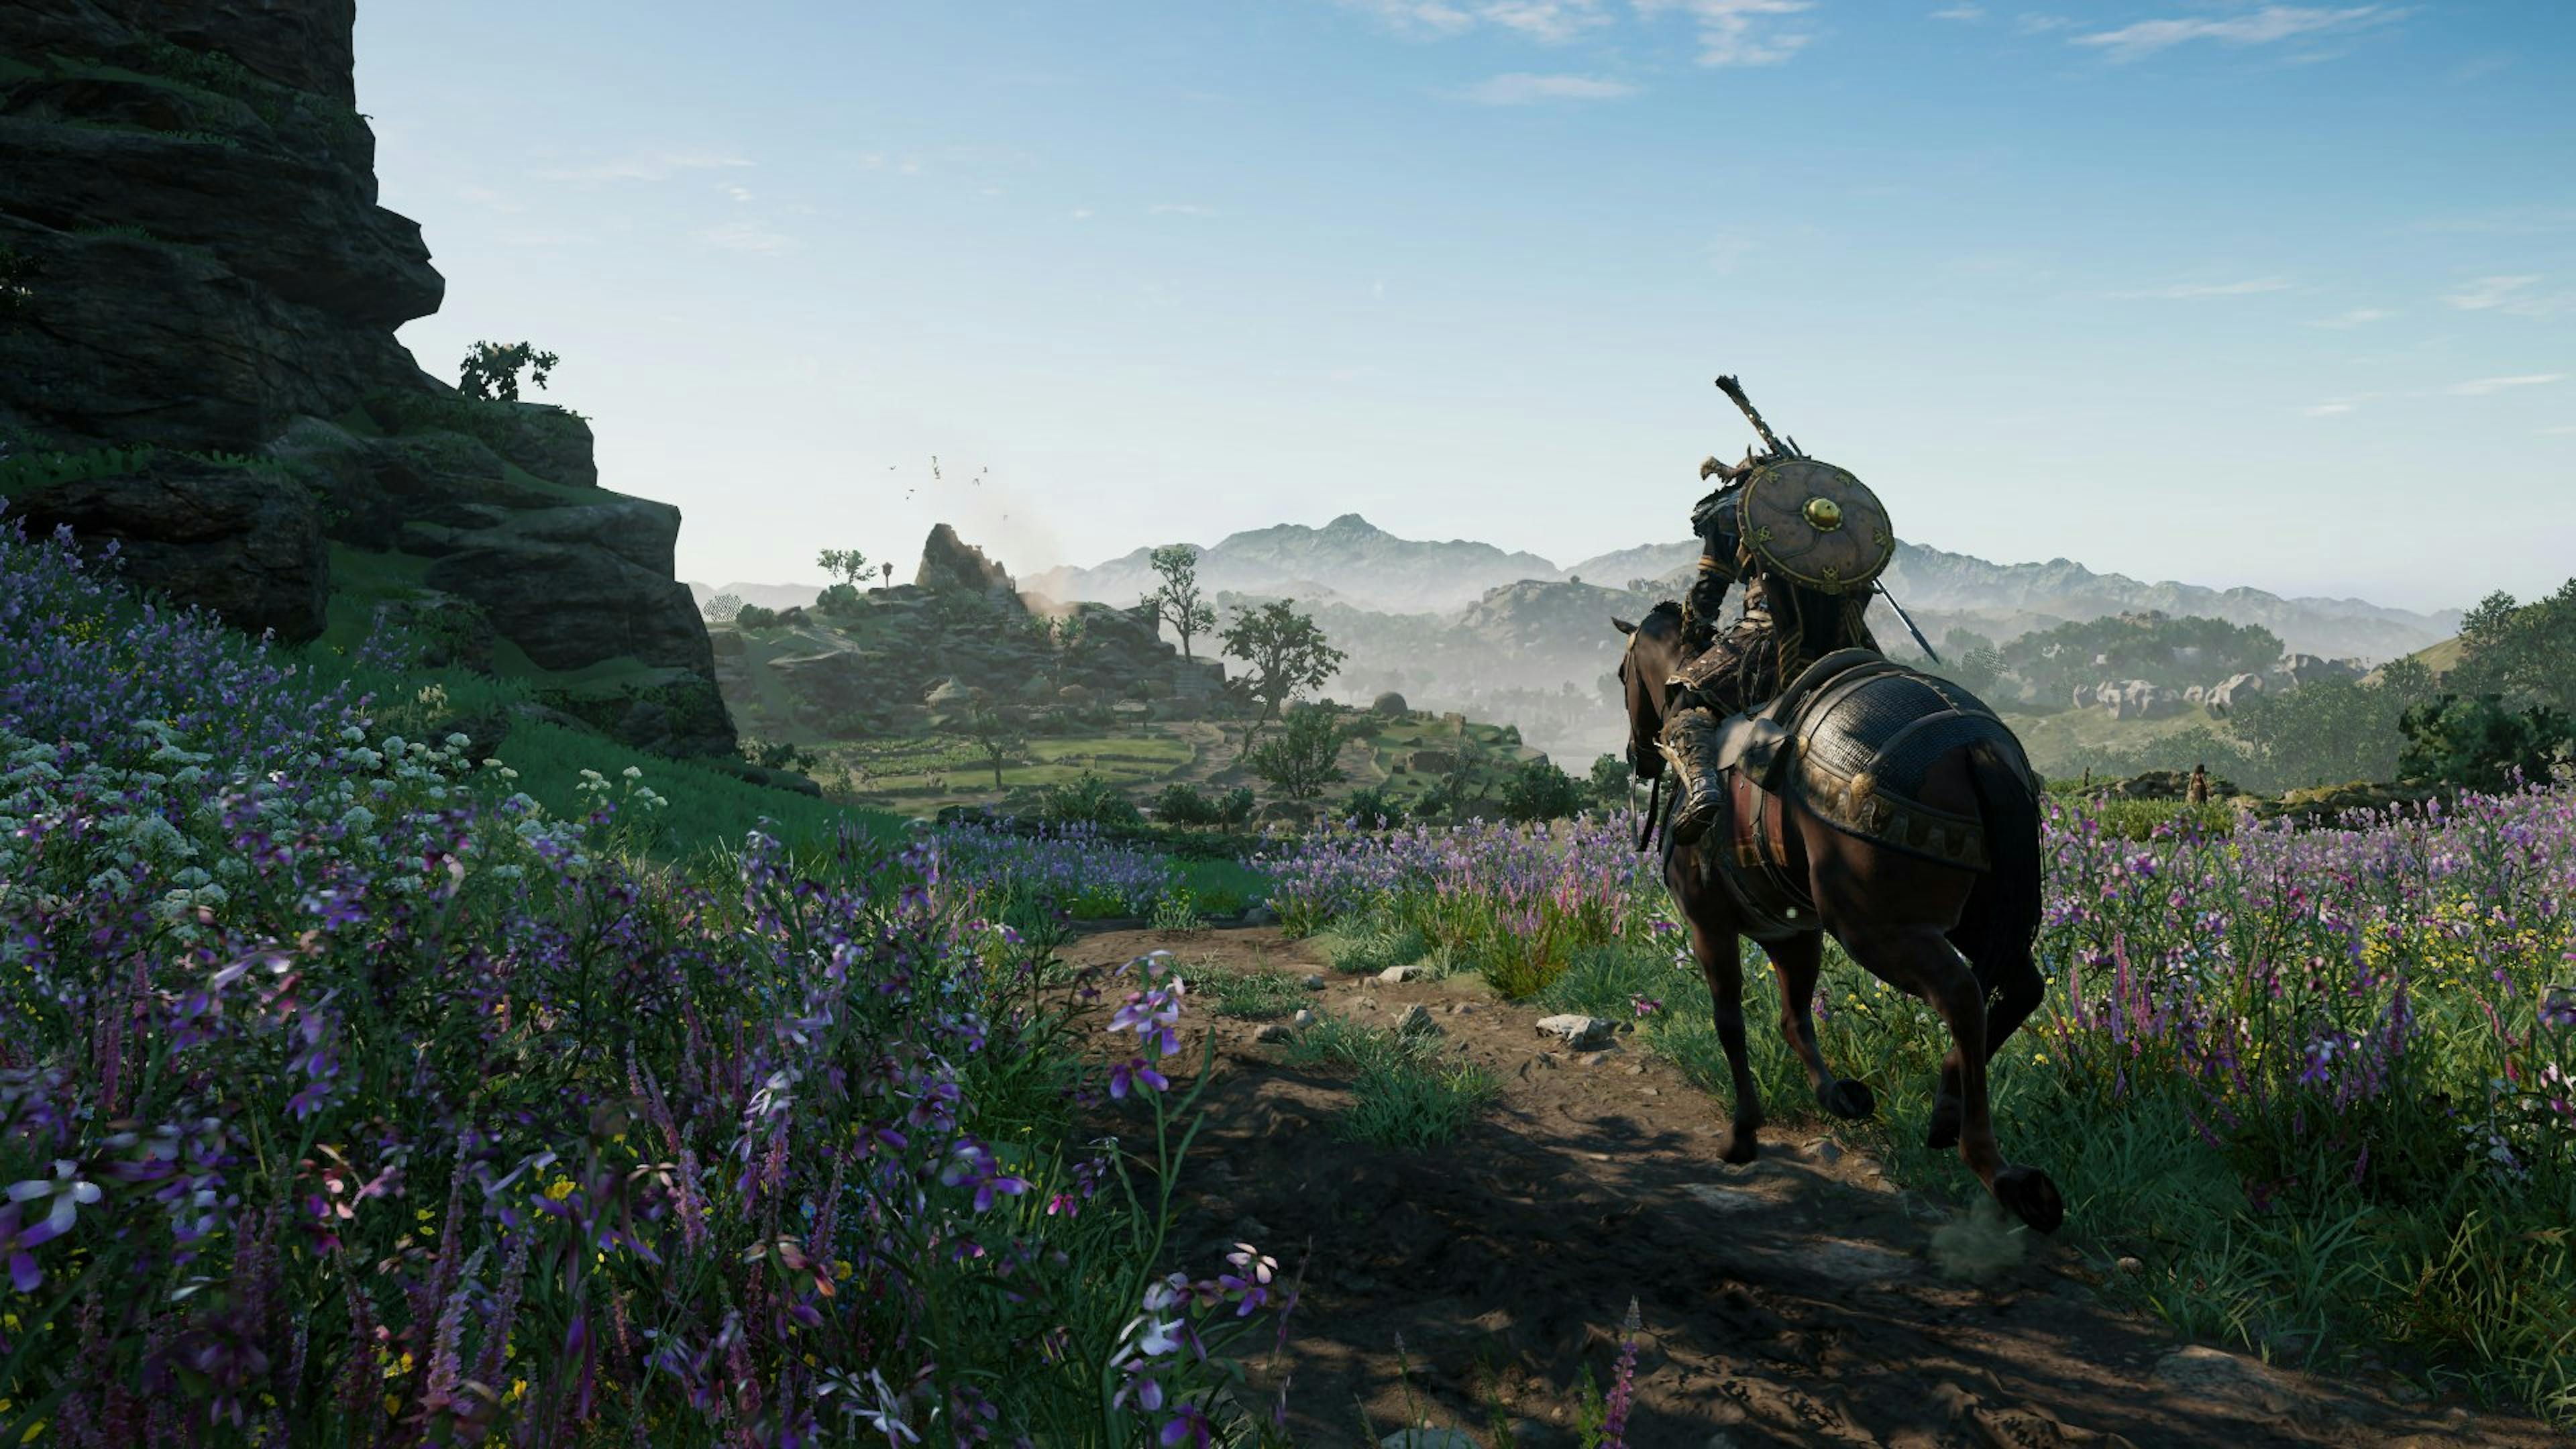 Screenshot taken during normal gameplay